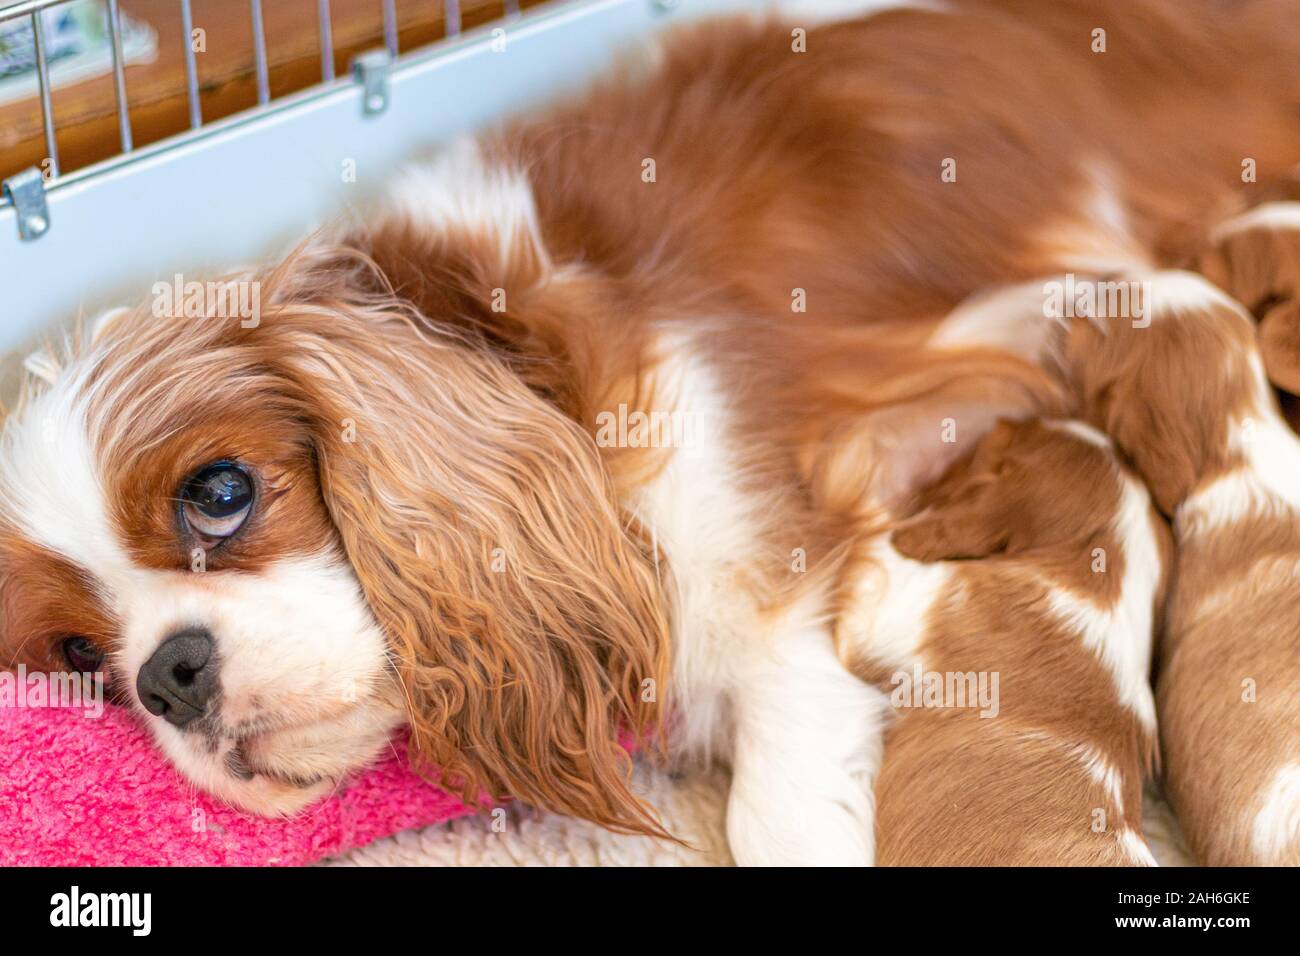 Una femmina di Cavalier King Charles Spaniel giace in un letto di cane allattava il neonato cuccioli. La madre appoggia la testa su un cuscino rosa per alimentazione, come t Foto Stock